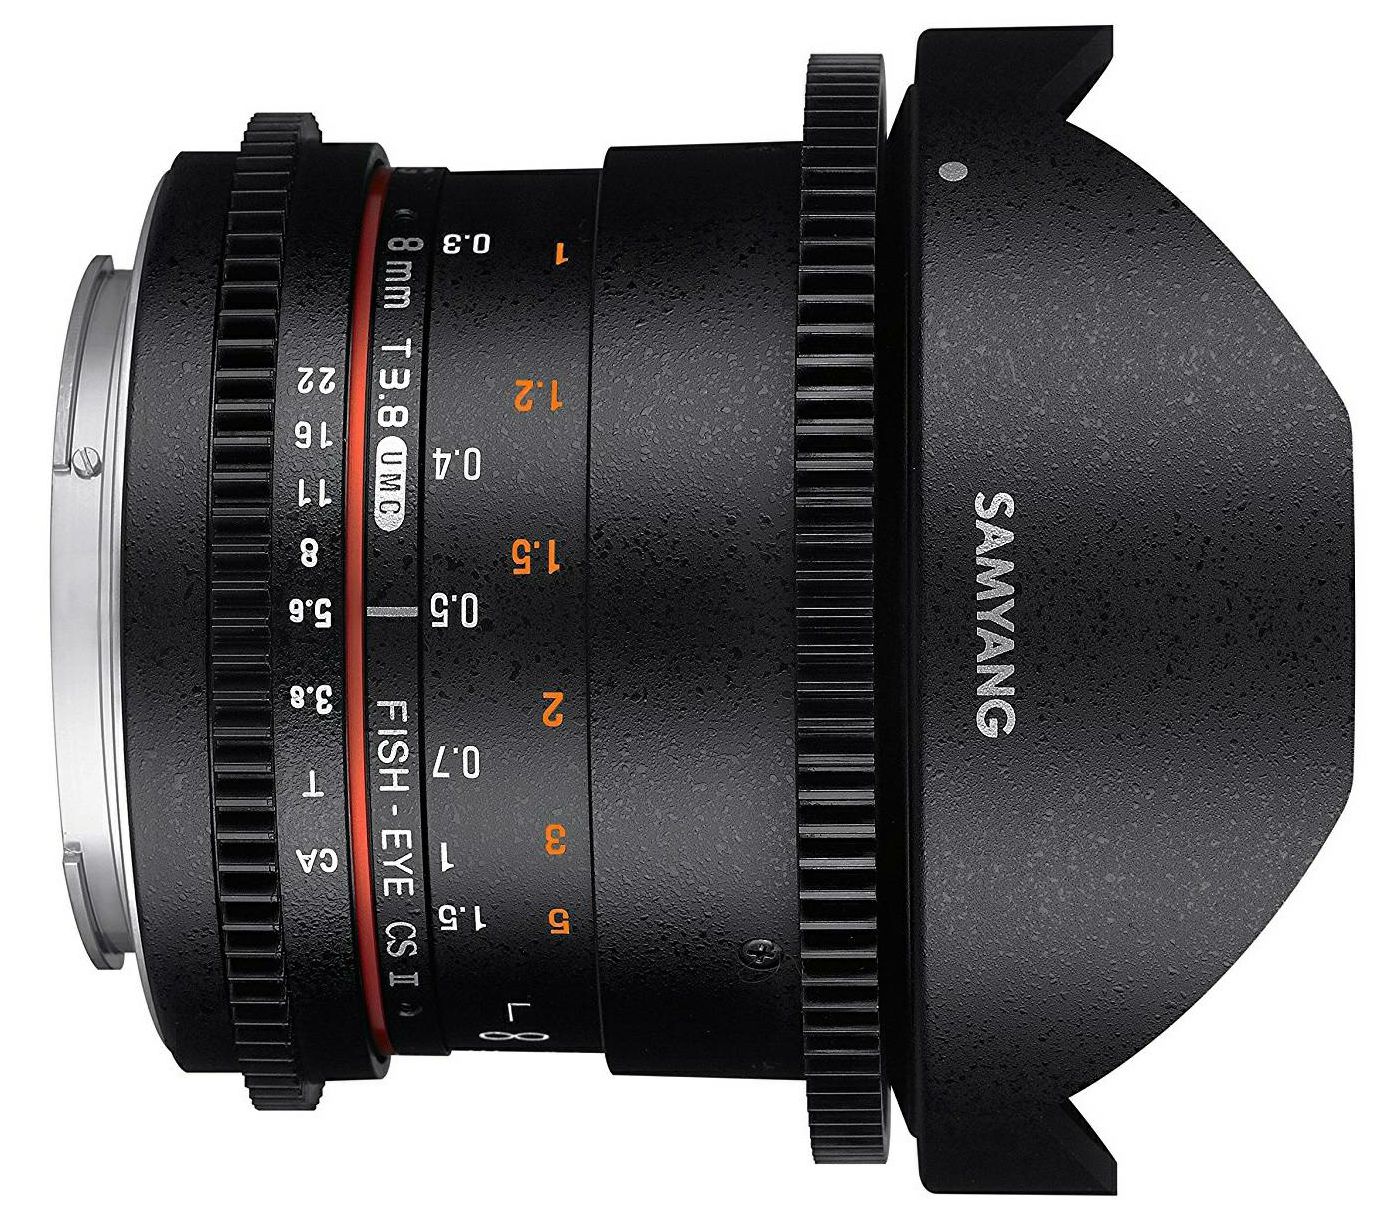 Samyang 8mm T3.8 VDSLR II CSII Fisheye objektiv za Sony A-mount